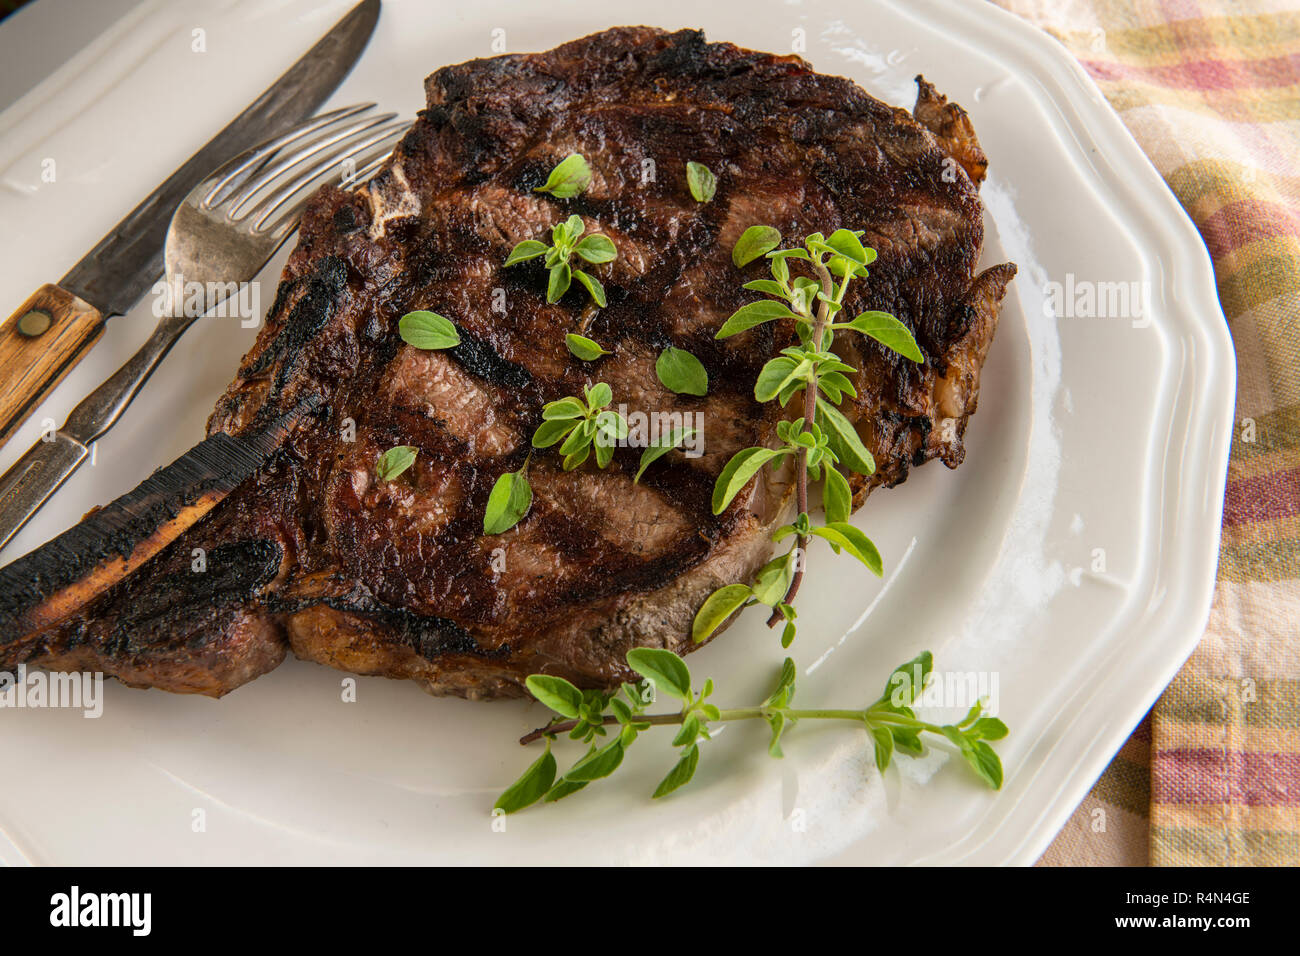 Le steak grillé et l'origan sur la plaque Banque D'Images